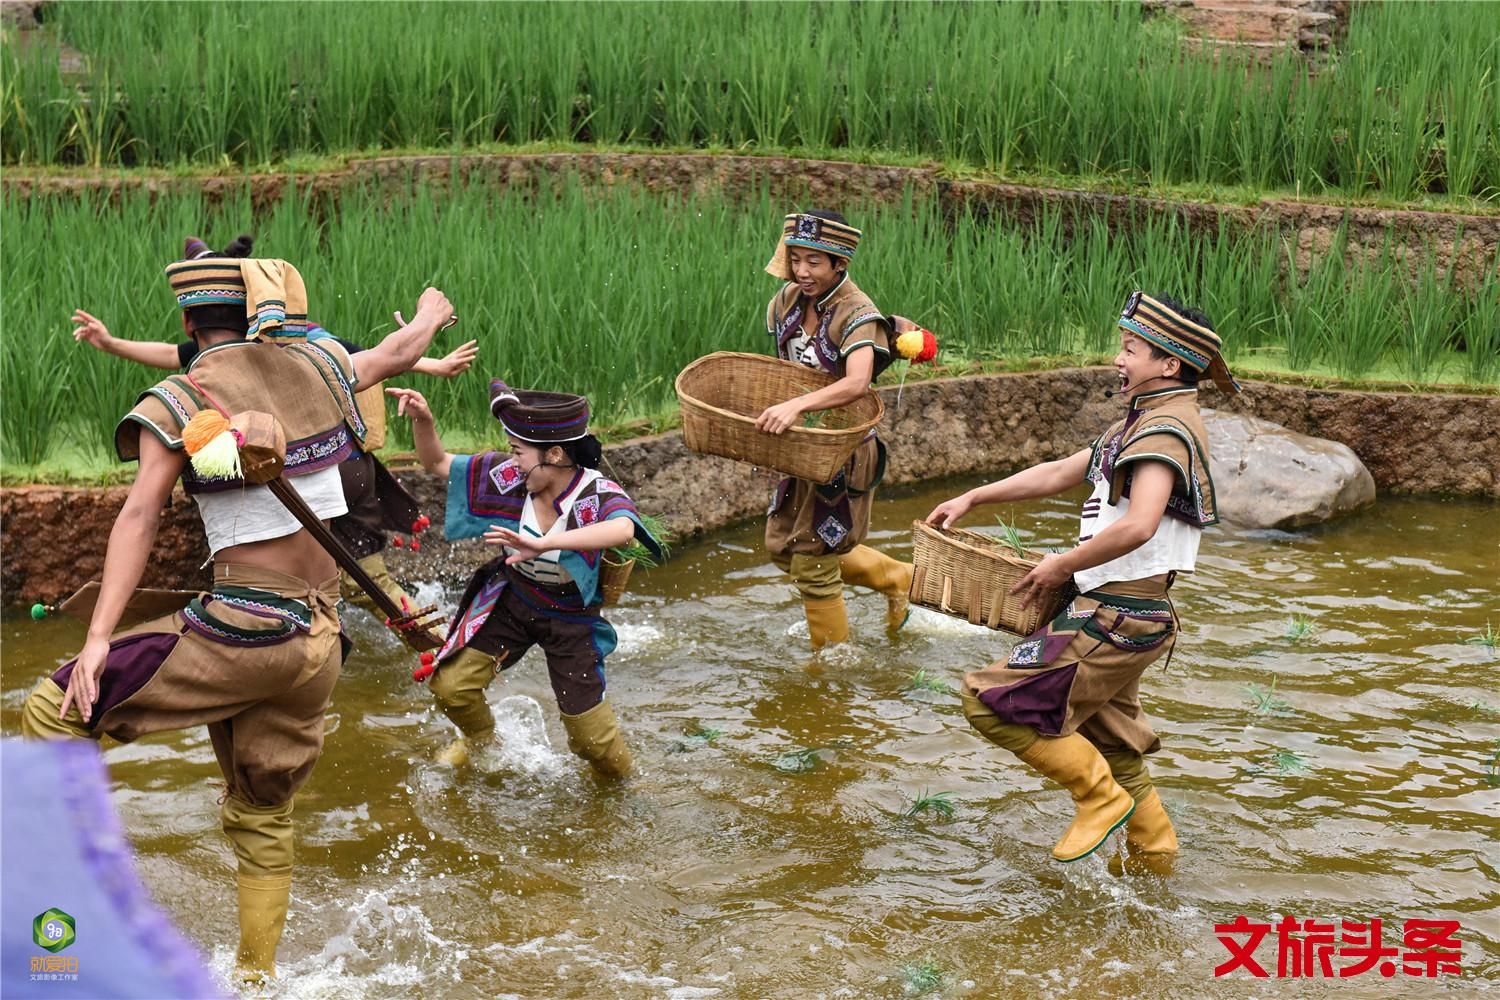 感受哈尼族的“嘎汤帕“节-中关村在线摄影论坛